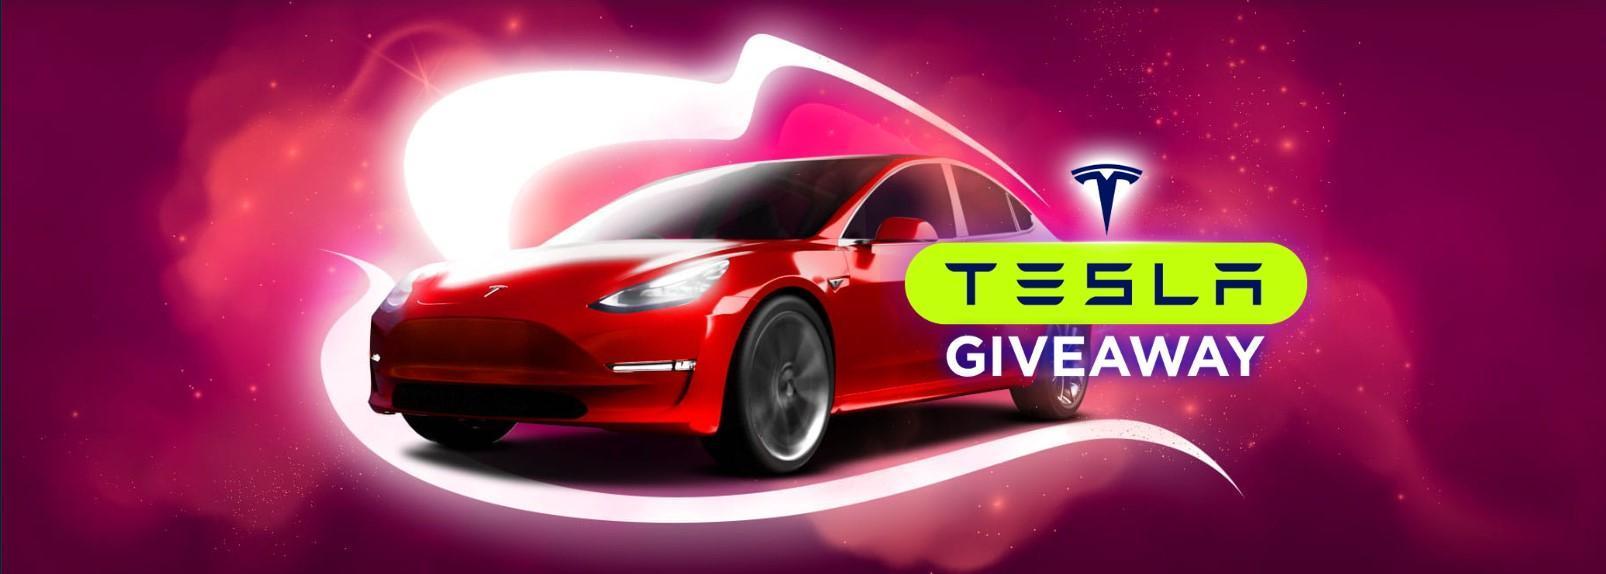 Punainen Tesla, jonka voi voittaa BitStarz Casinolta arvonnasta